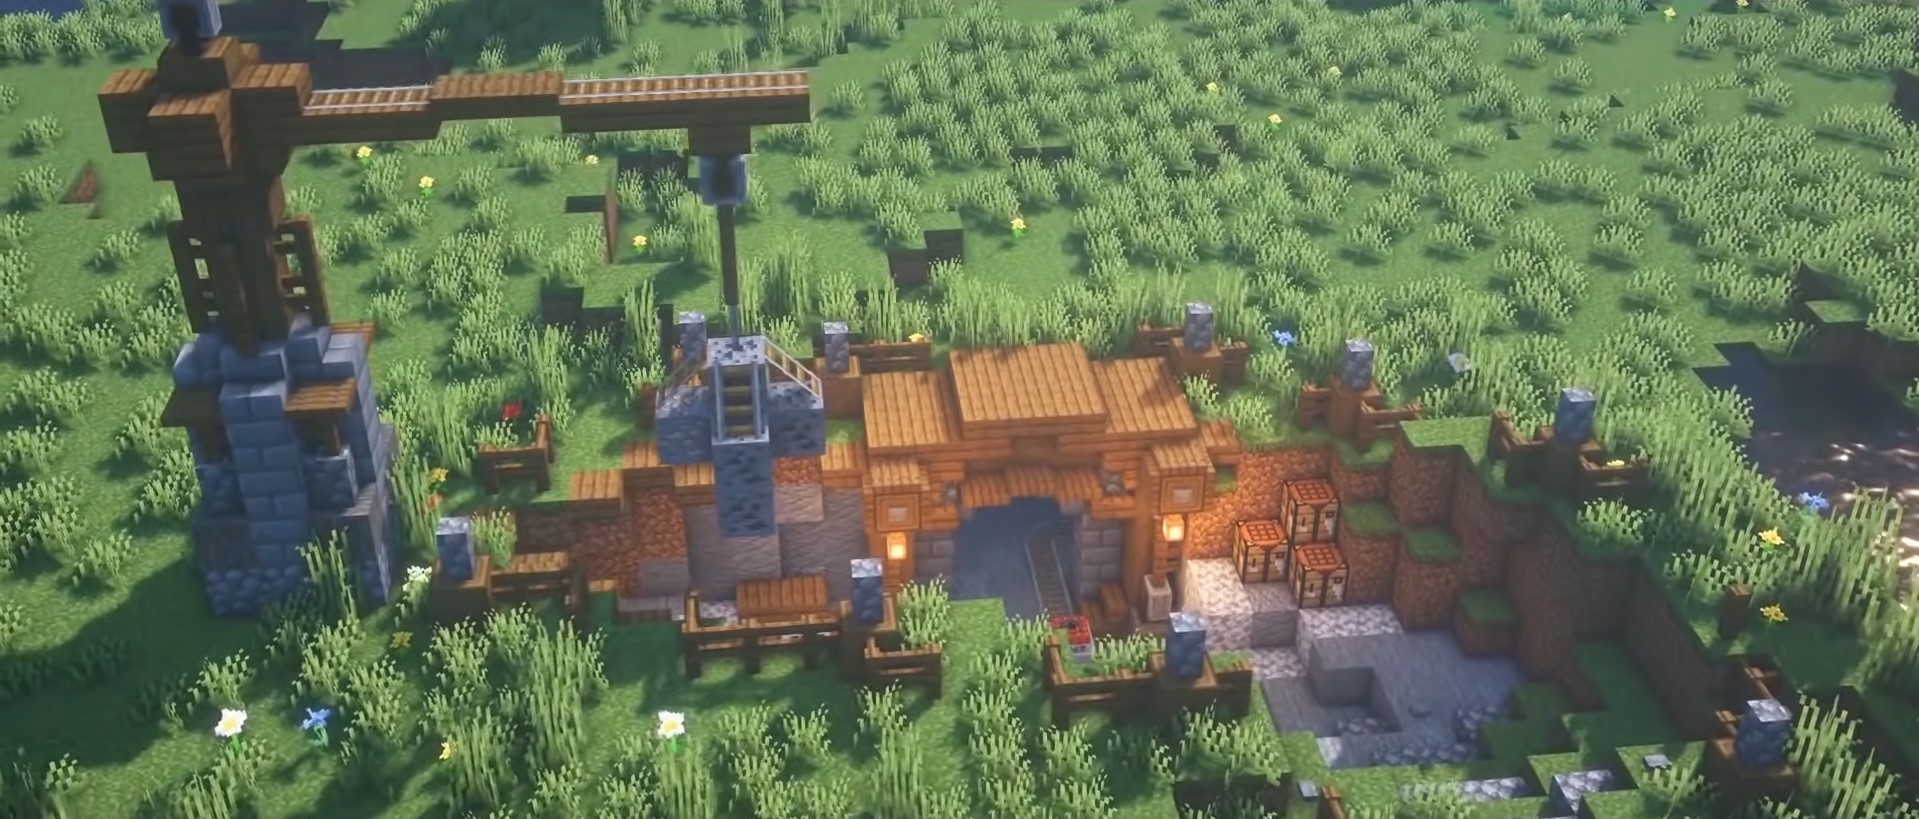 Simple Mining Camp minecraft building idea